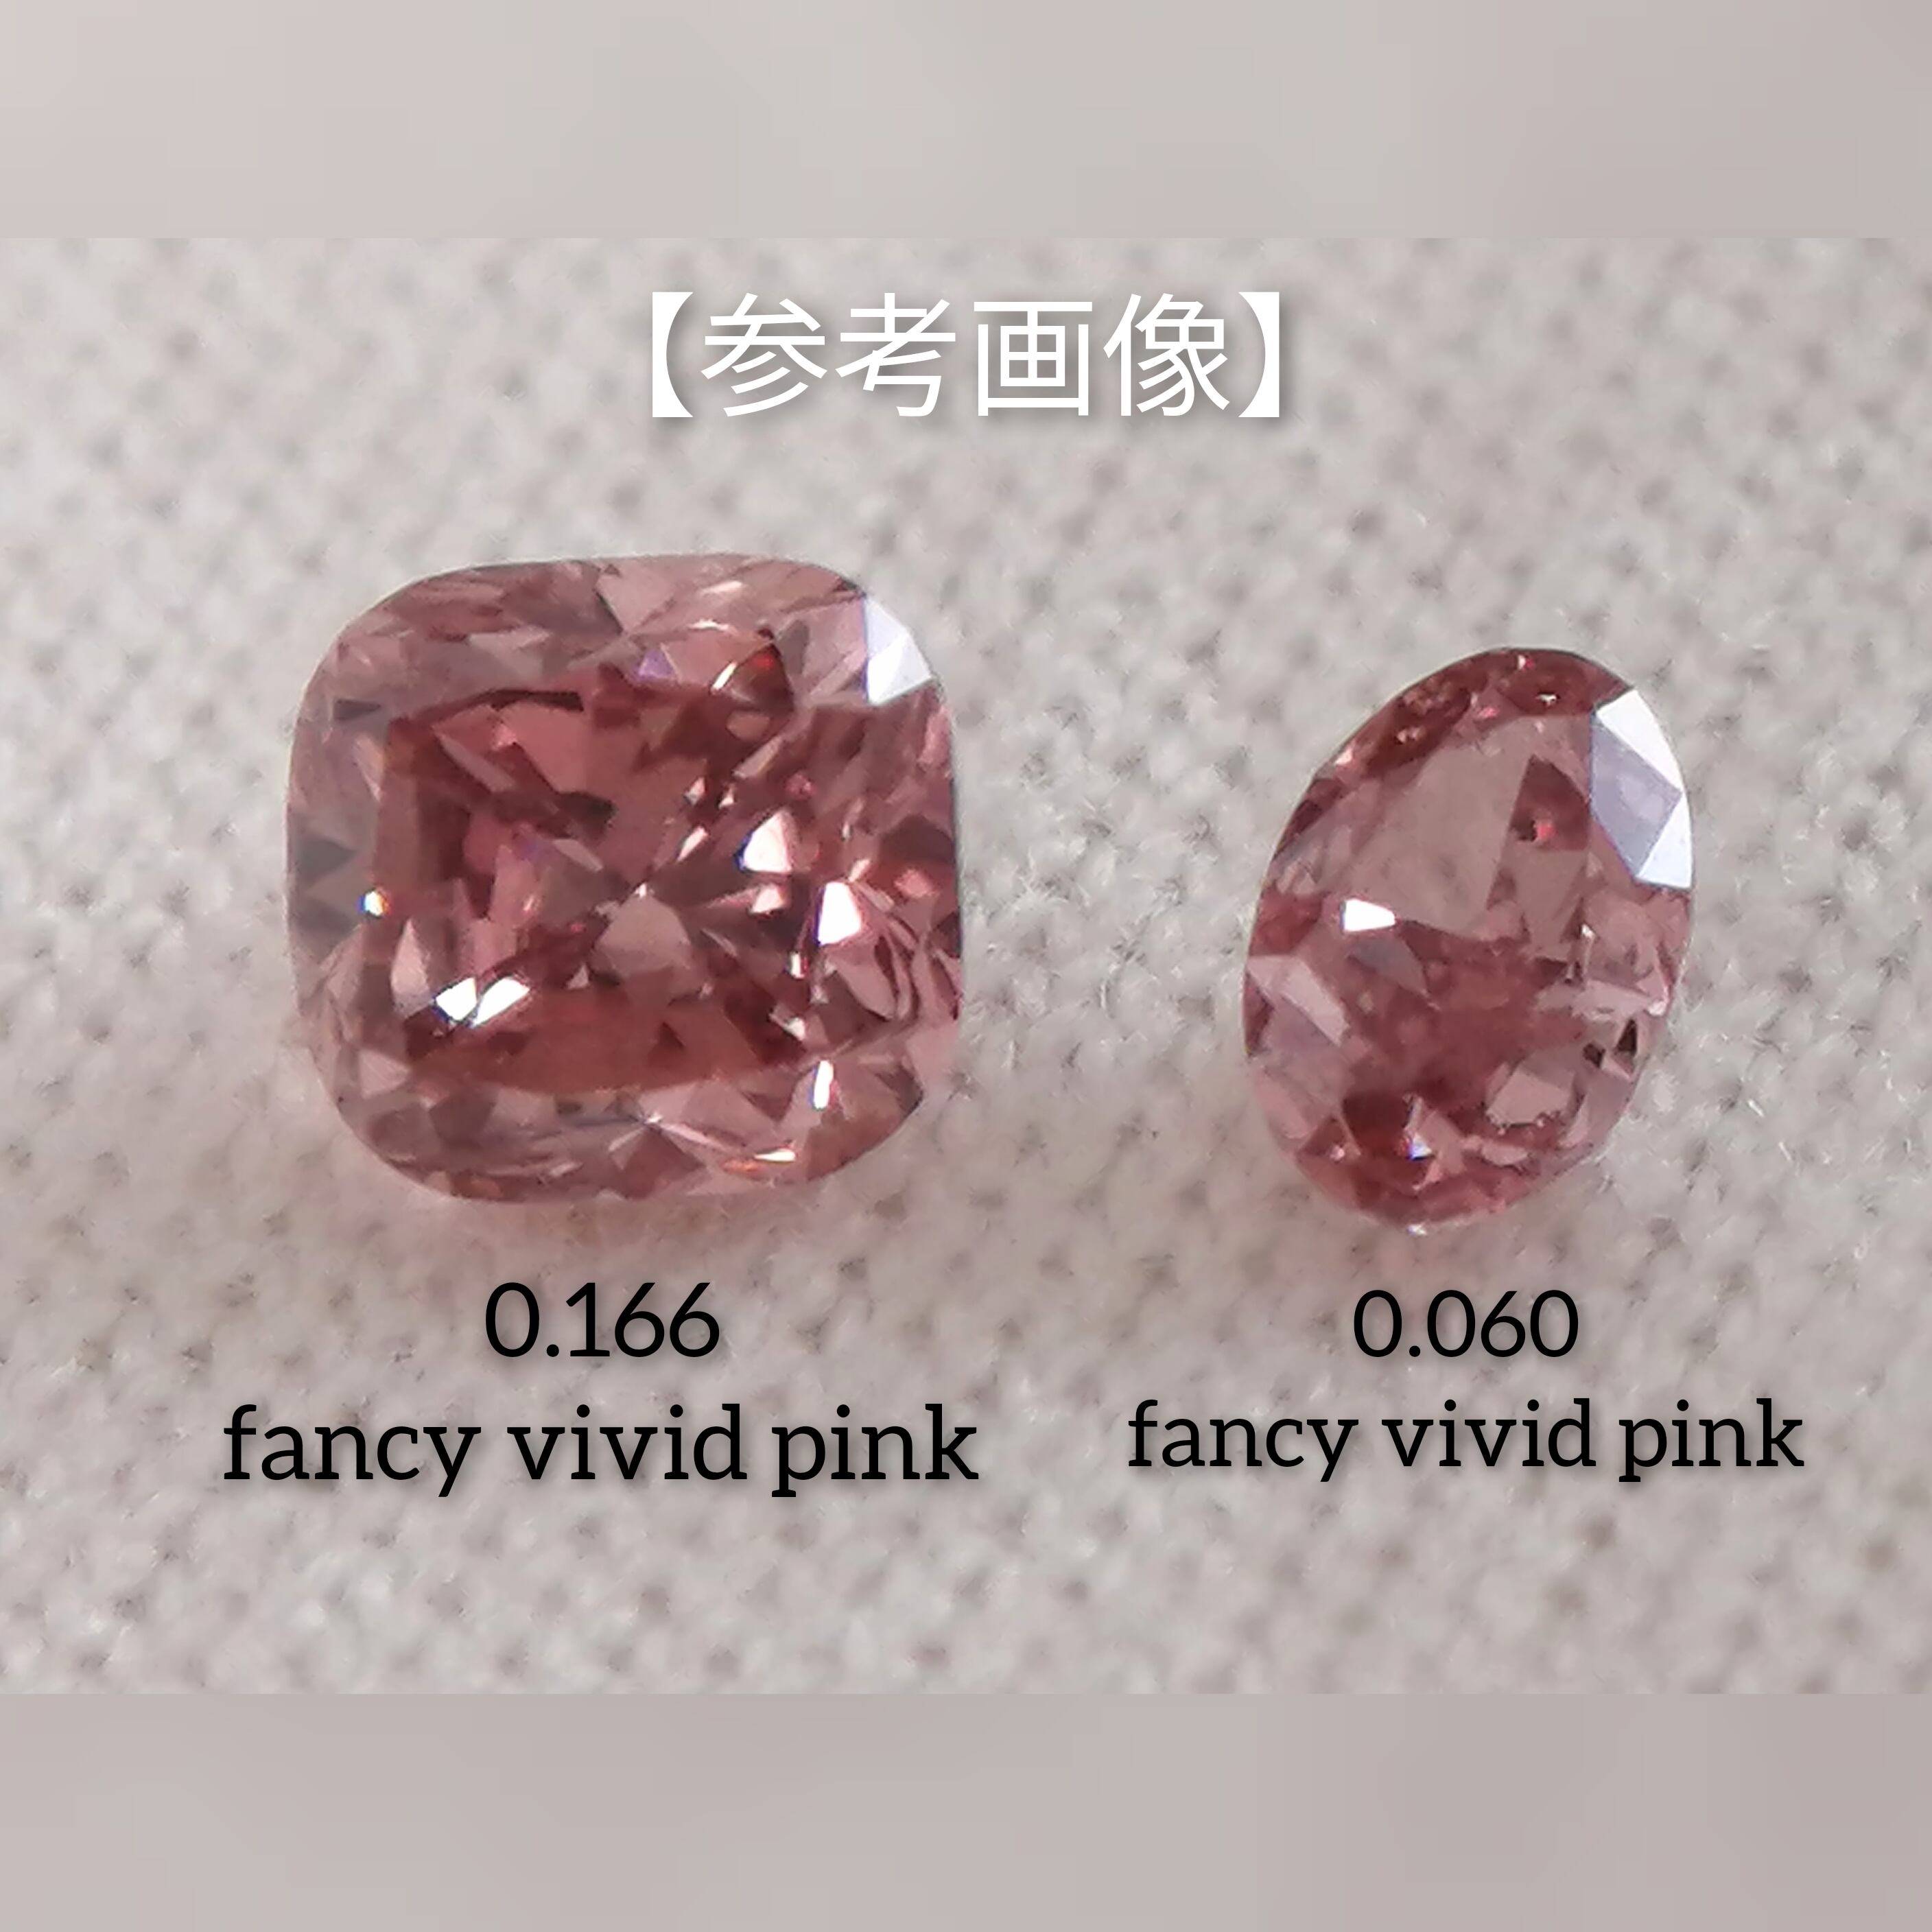 ピンクダイヤモンドルース/ F.V.P.PINK/ 0.081 ct.